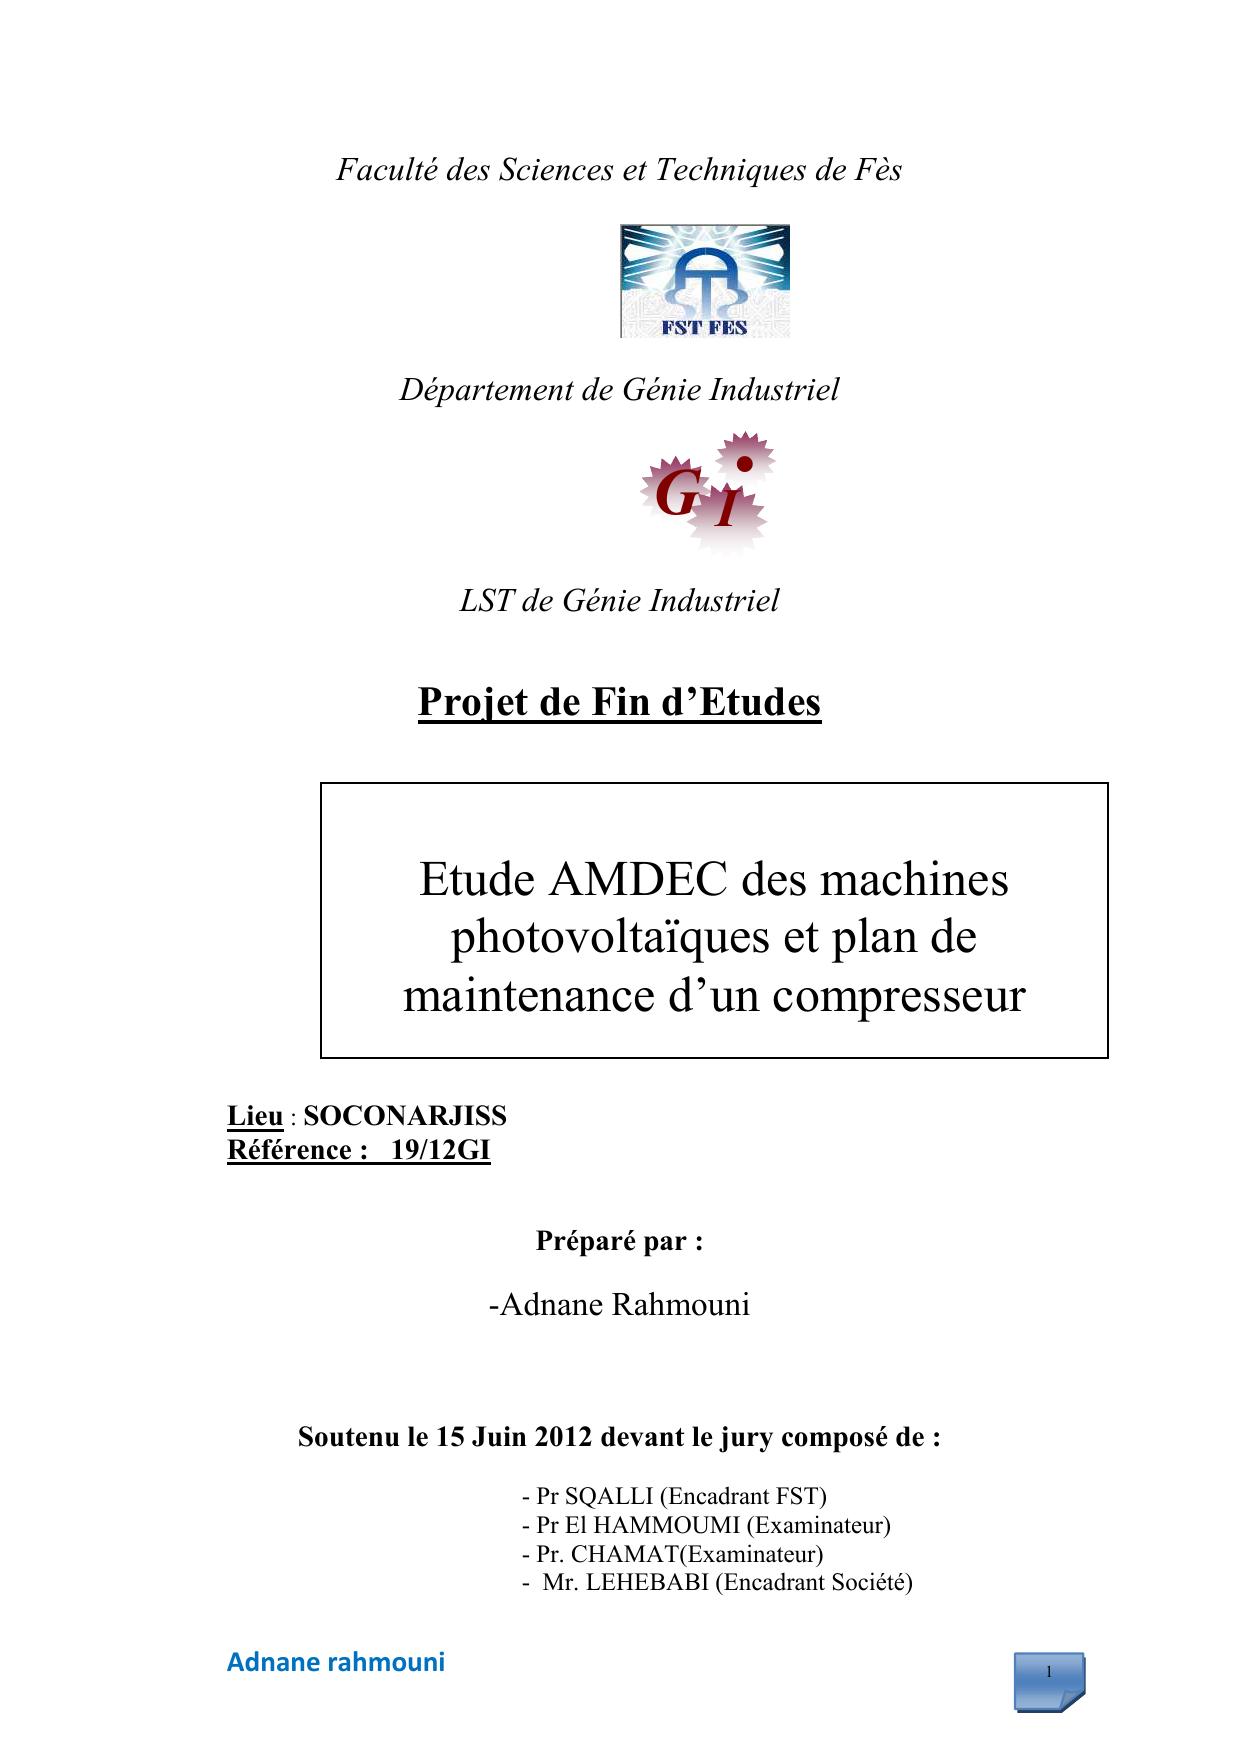 Etude AMDEC des machines photovoltaïques et plan de maintenance d’un compresseur